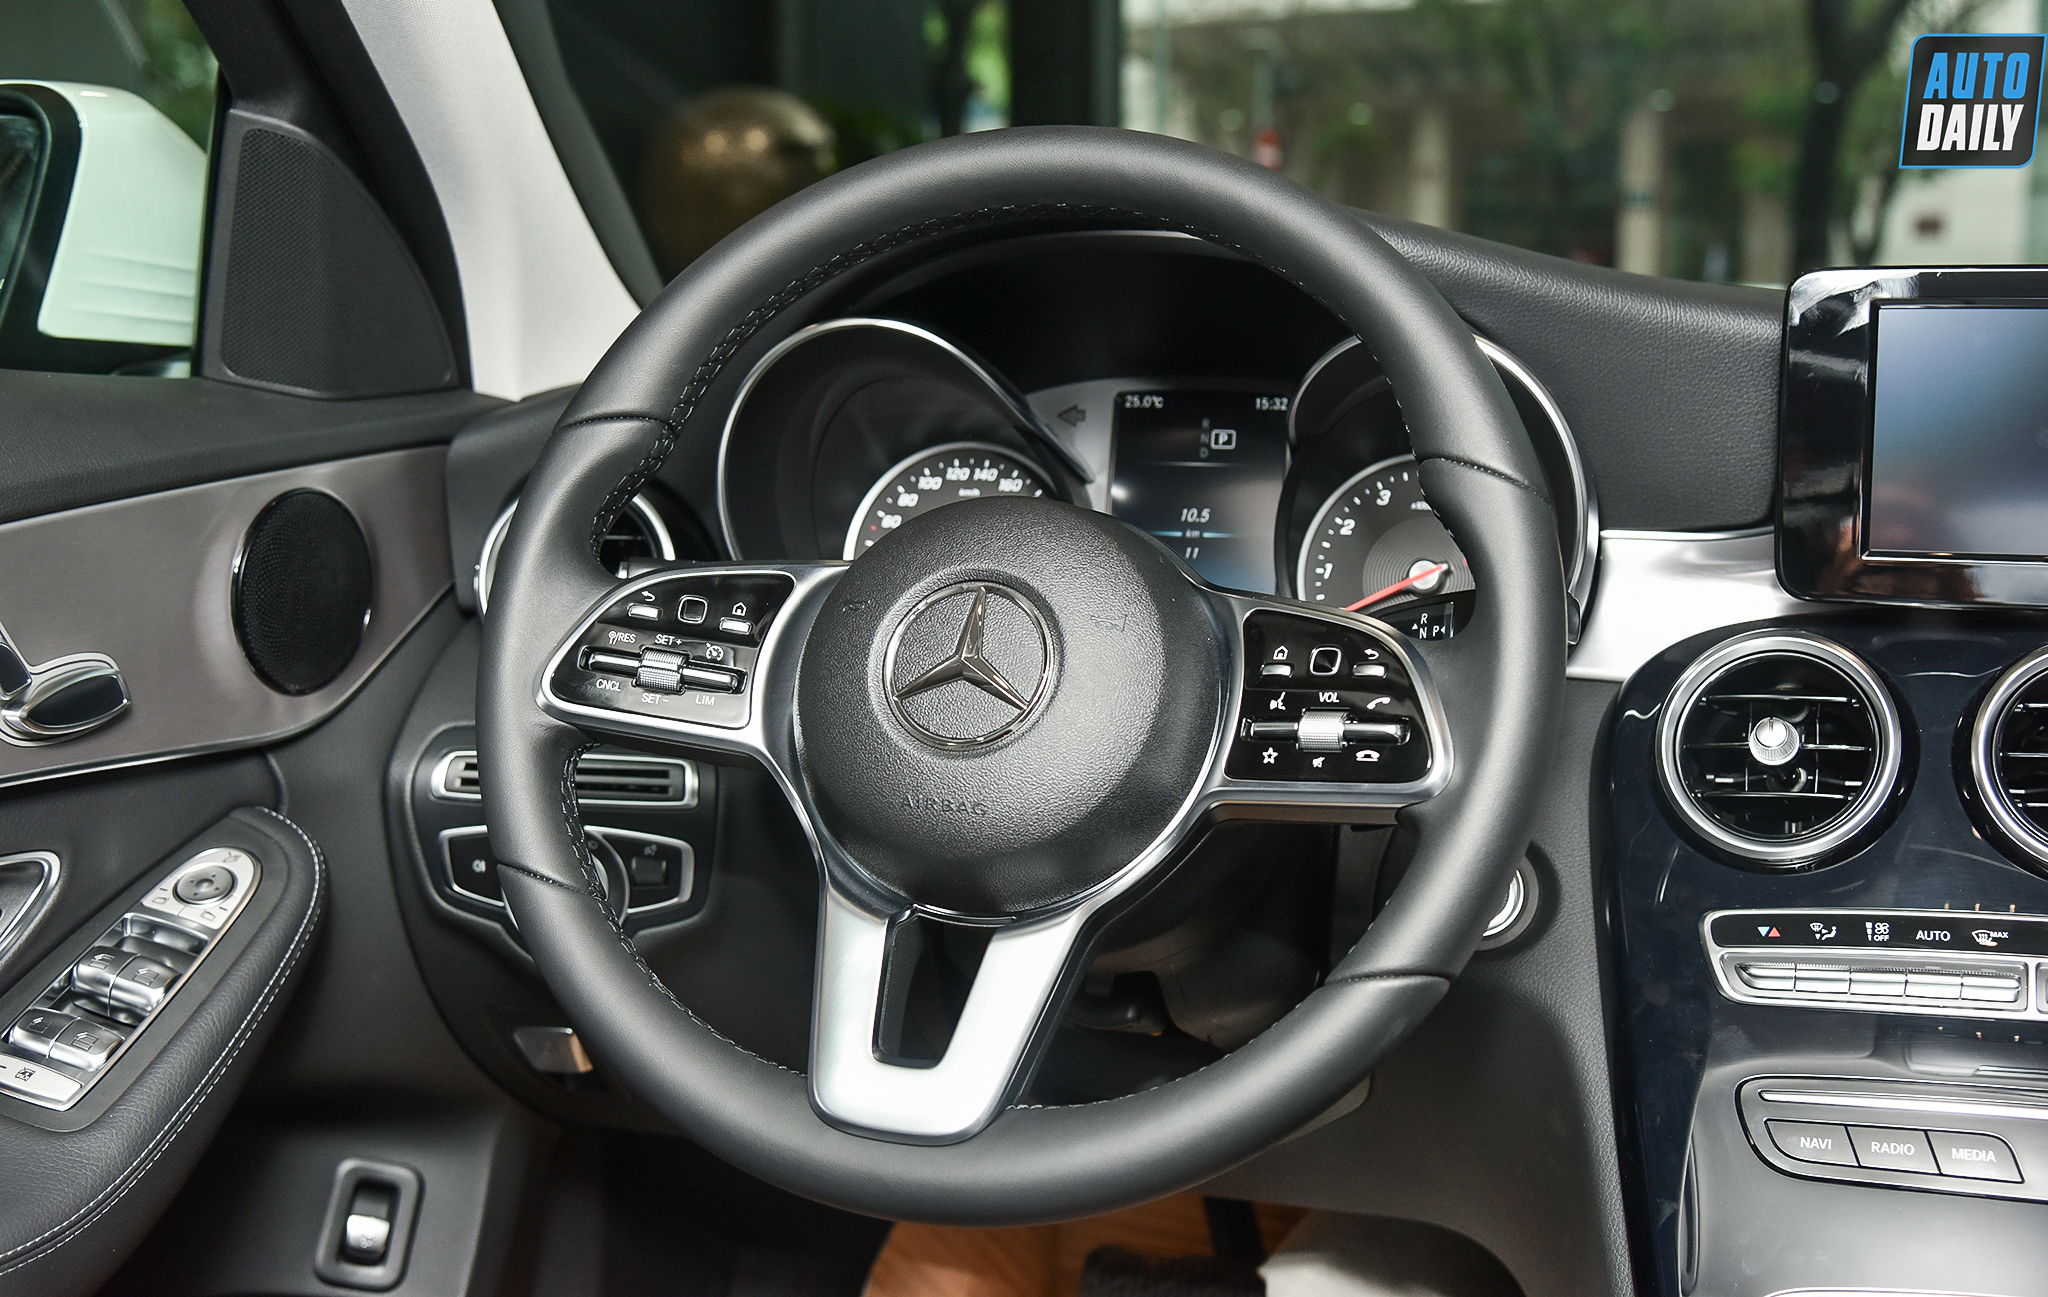 Chi tiết giá lăn bánh Mercedes-Benz C180 AMG 2021 tại Việt Nam Mercedes-Benz C180 AMG mới tại Việt Nam có giá 1,499 tỷ đồng Chi tiết Mercedes-Benz C180 2020 giá 1,399 tỷ tại đại lý 13.jpg